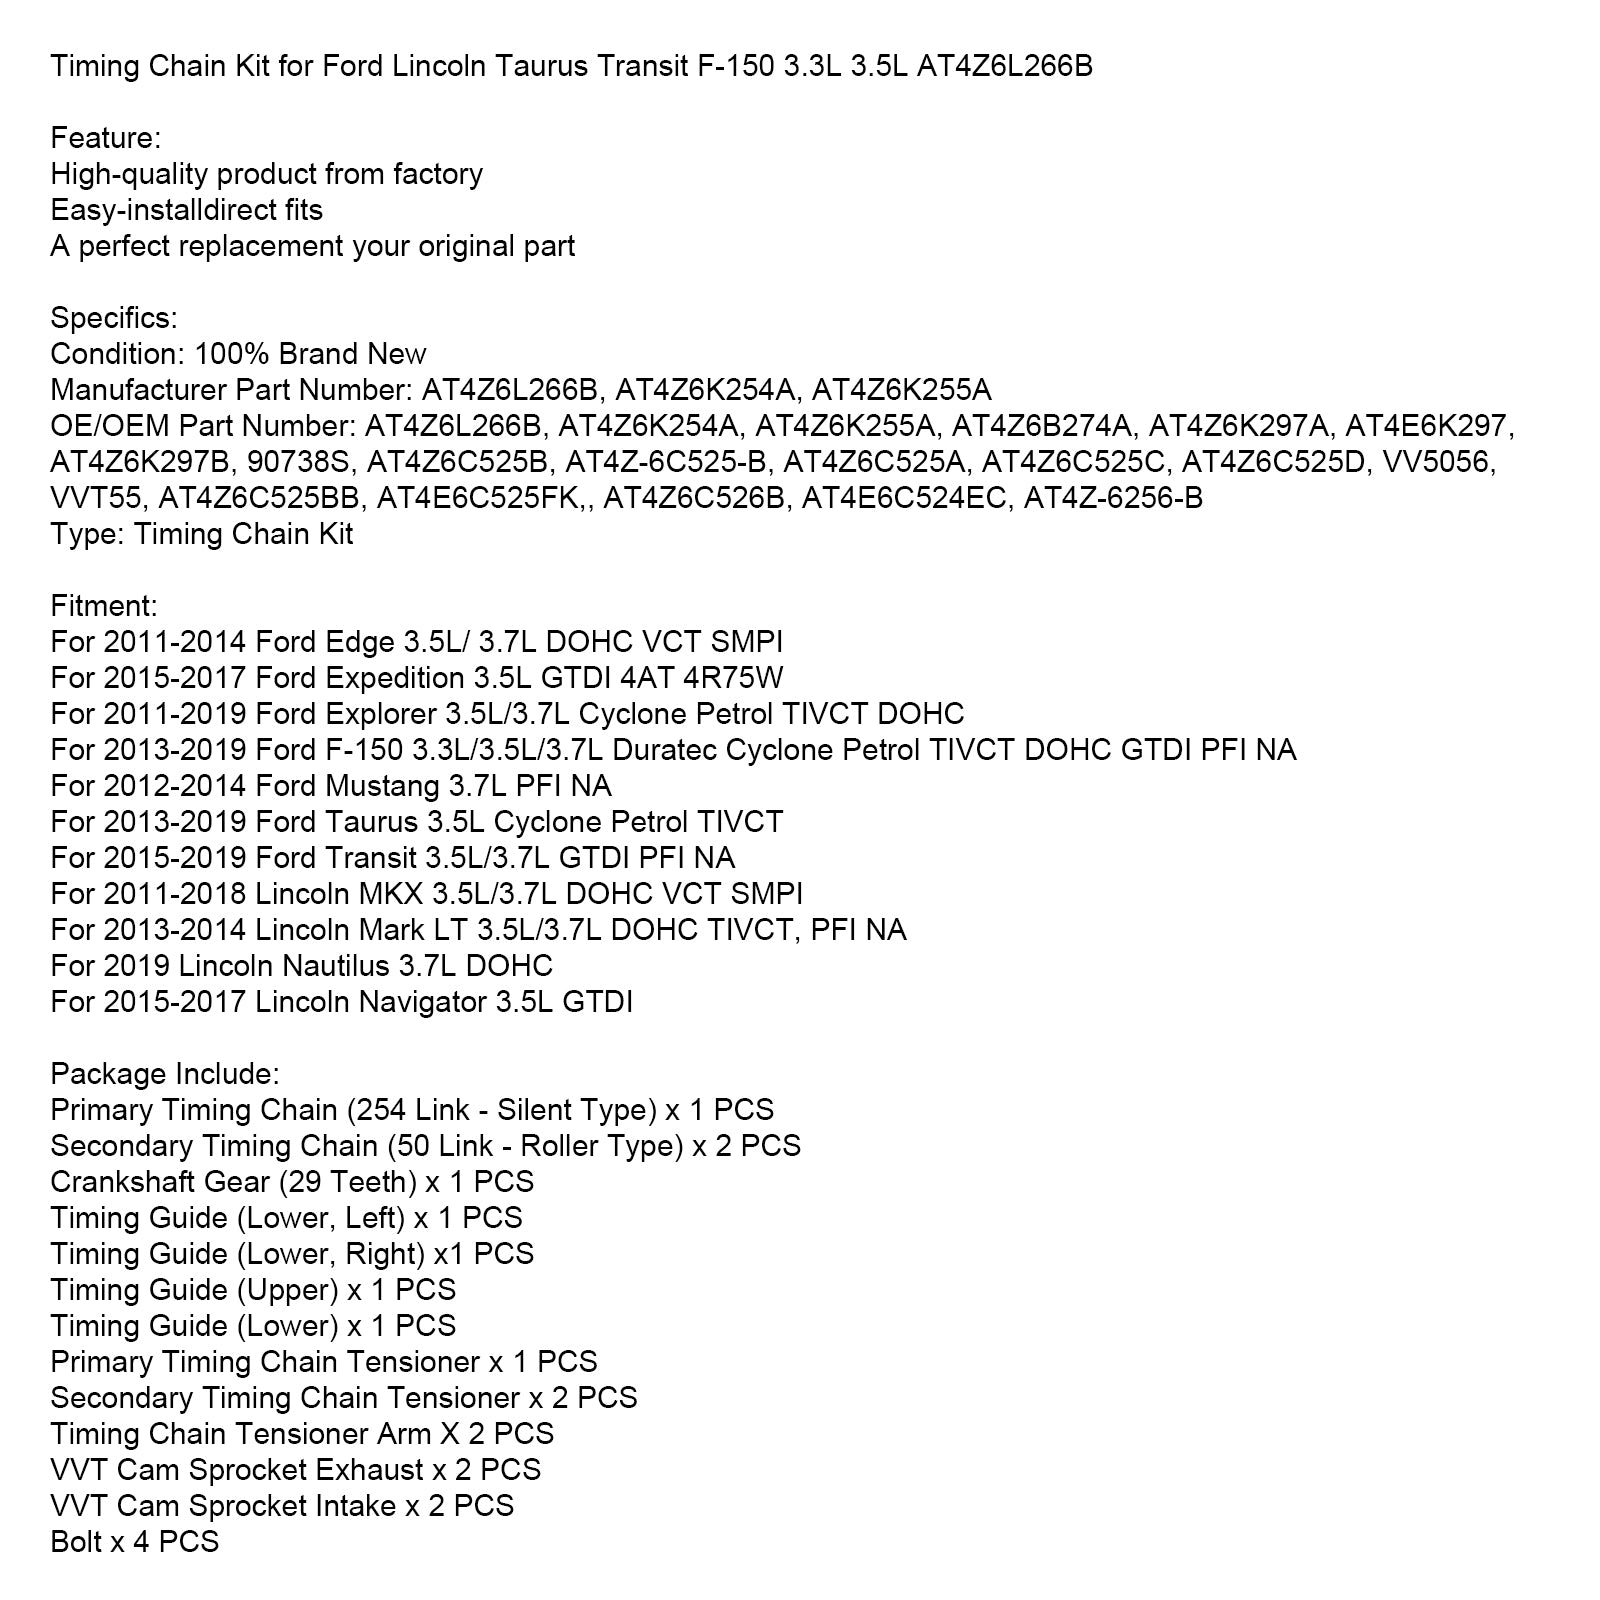 Kit chaîne de distribution Ford Mustang 3.7L PFI NA 2012-2014 AT4Z6L266B